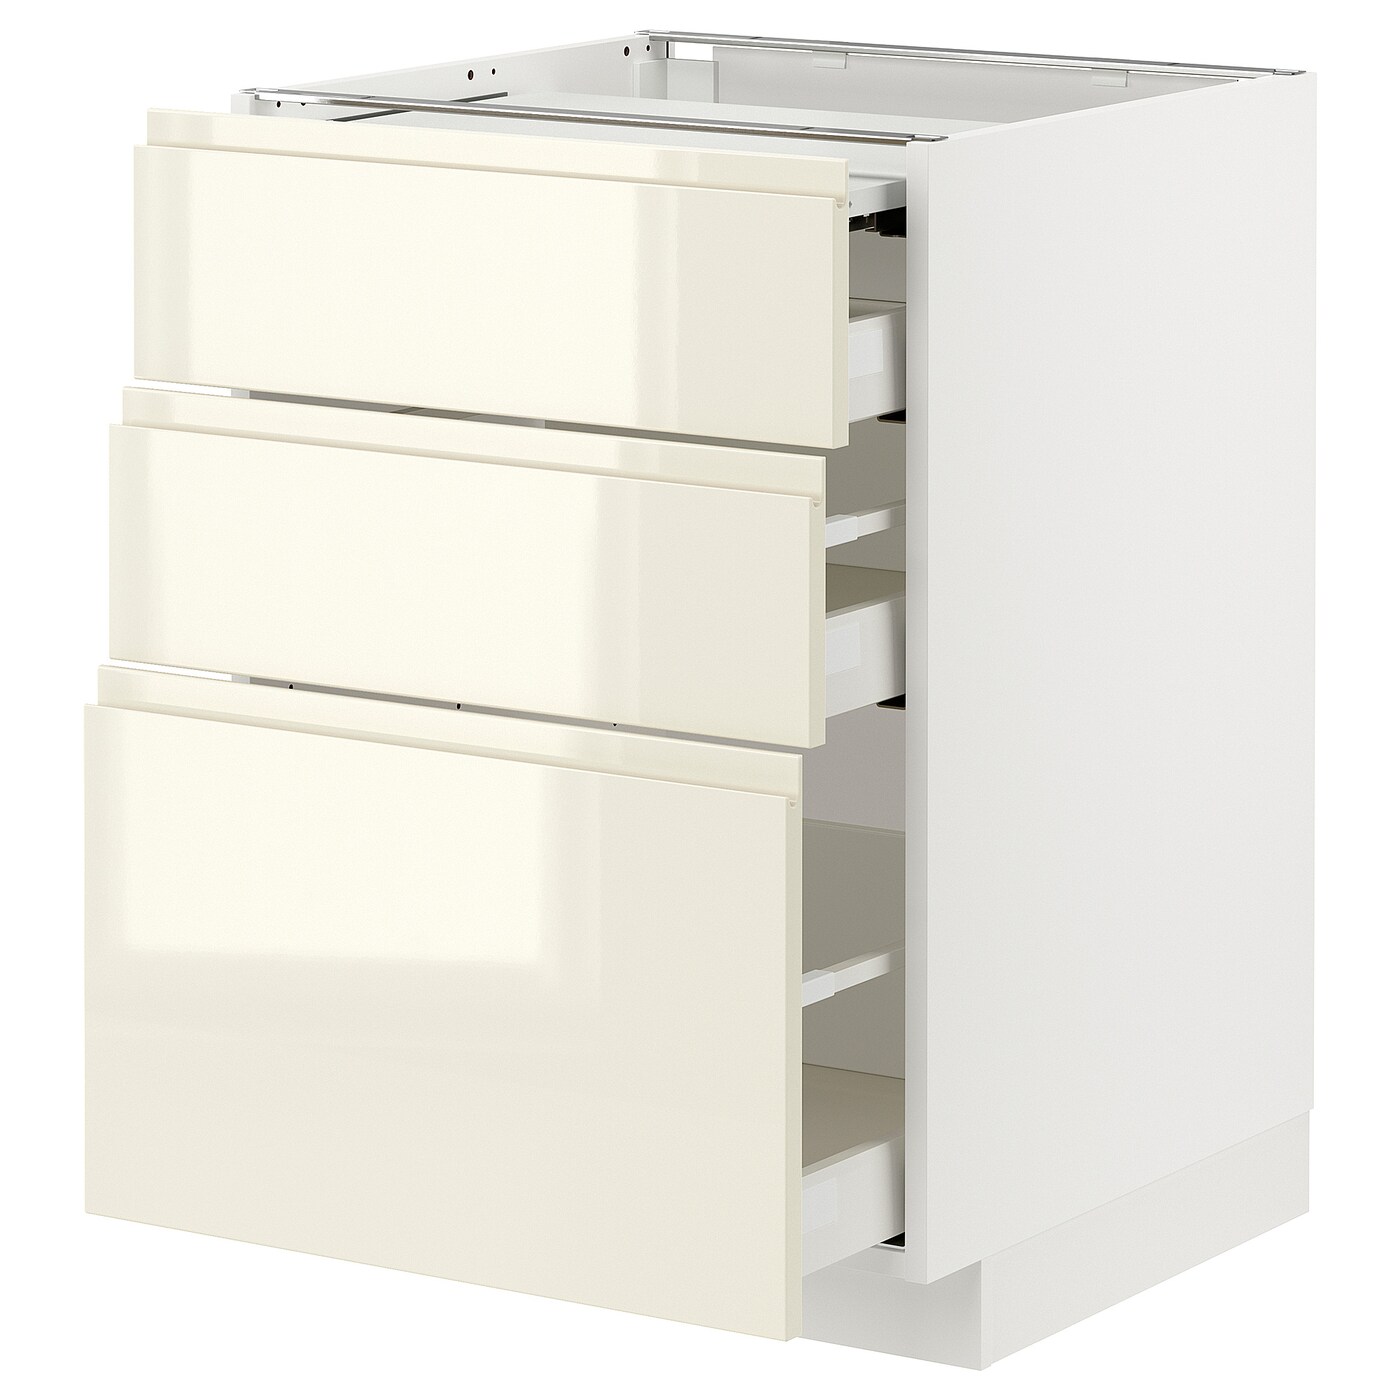 Напольный шкаф - IKEA METOD MAXIMERA, 88x62x60см, белый/светло-бежевый, МЕТОД МАКСИМЕРА ИКЕА